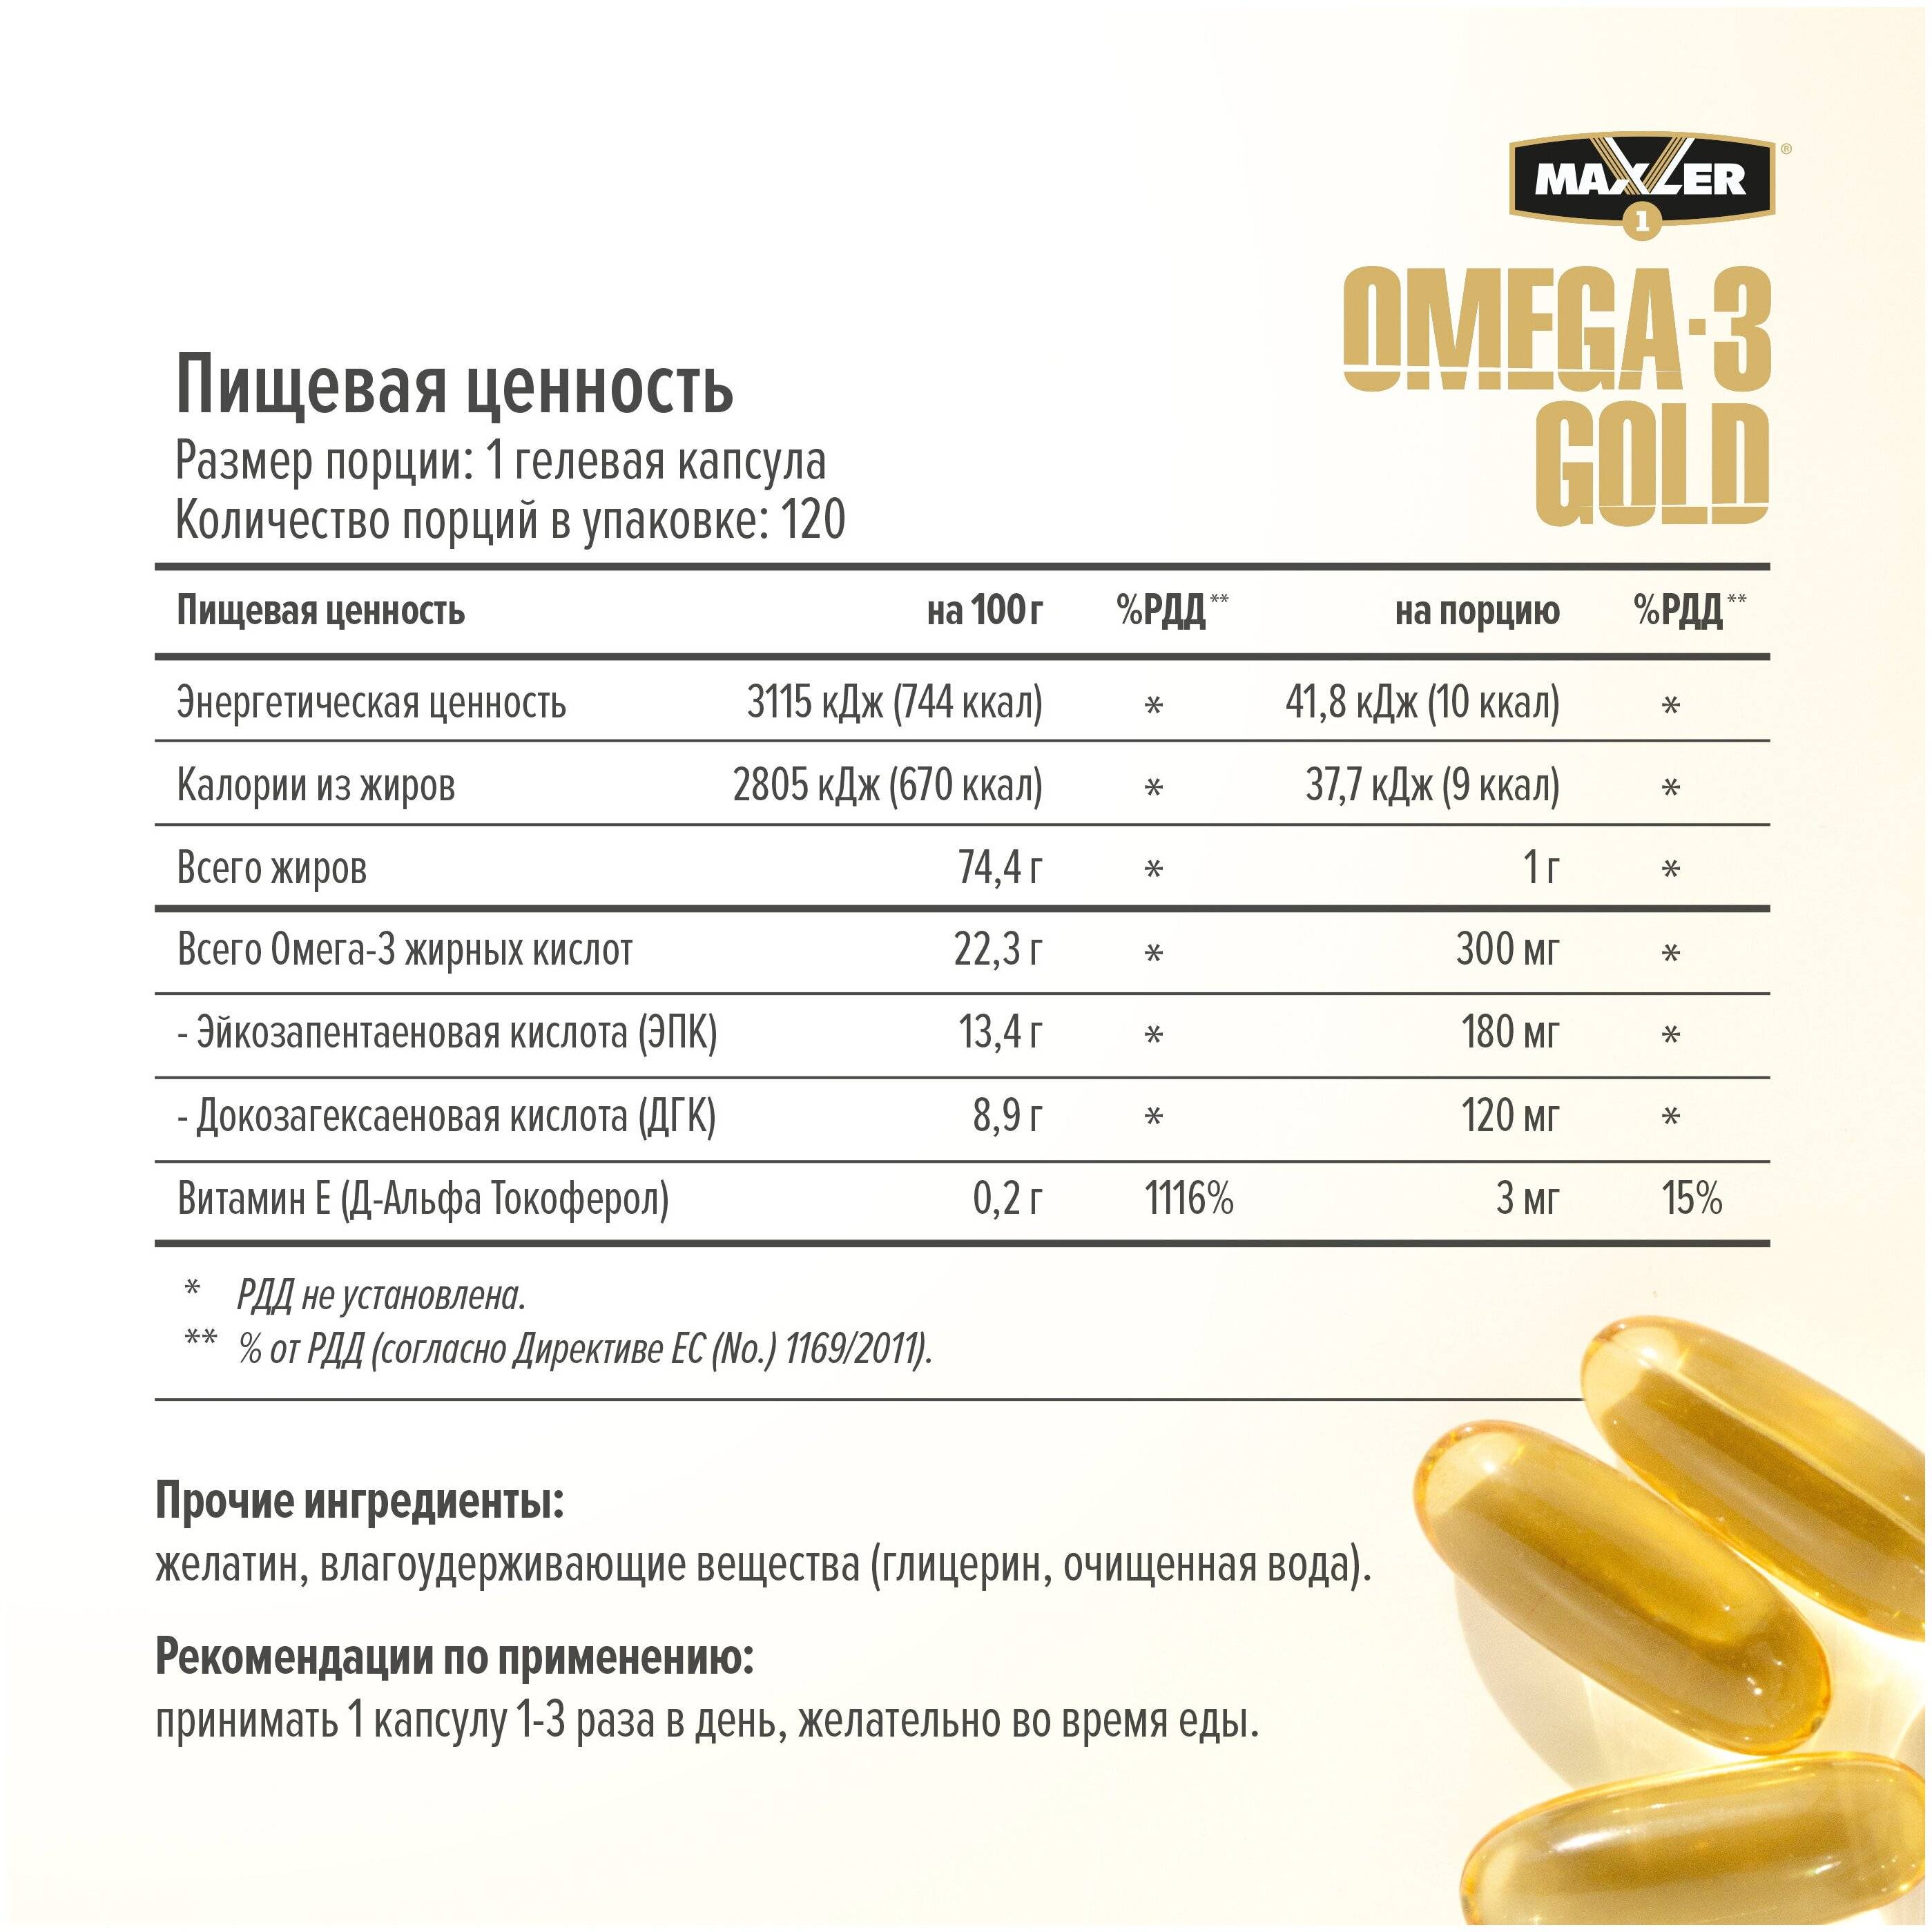 Как принимать финские витамины омега 3 и для чего нужны?